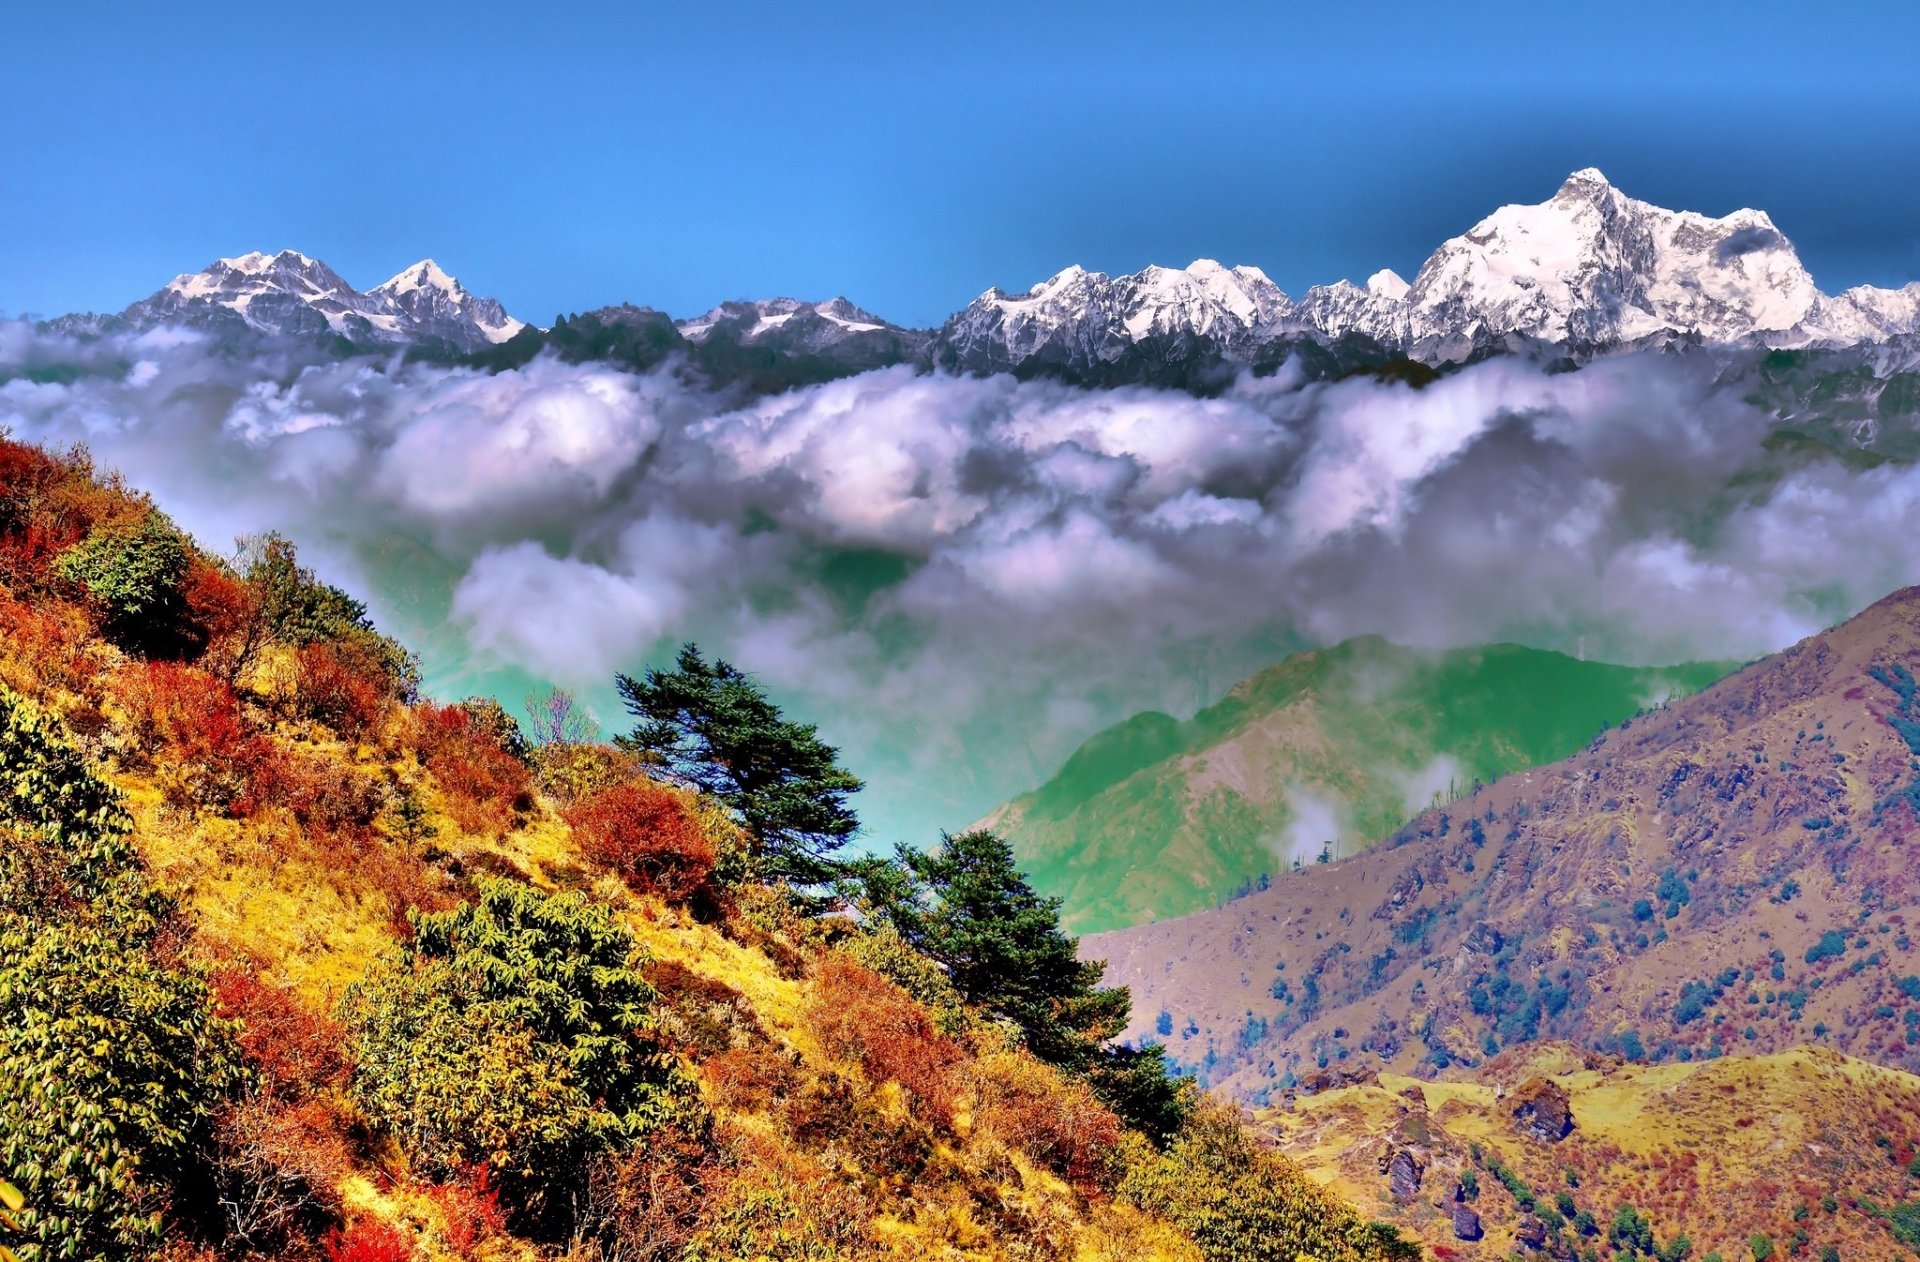 喜马拉雅山脉风光壁纸1920x1080分辨率下载,喜马拉雅山脉风光壁纸,高清图片,壁纸,自然风景-桌面城市